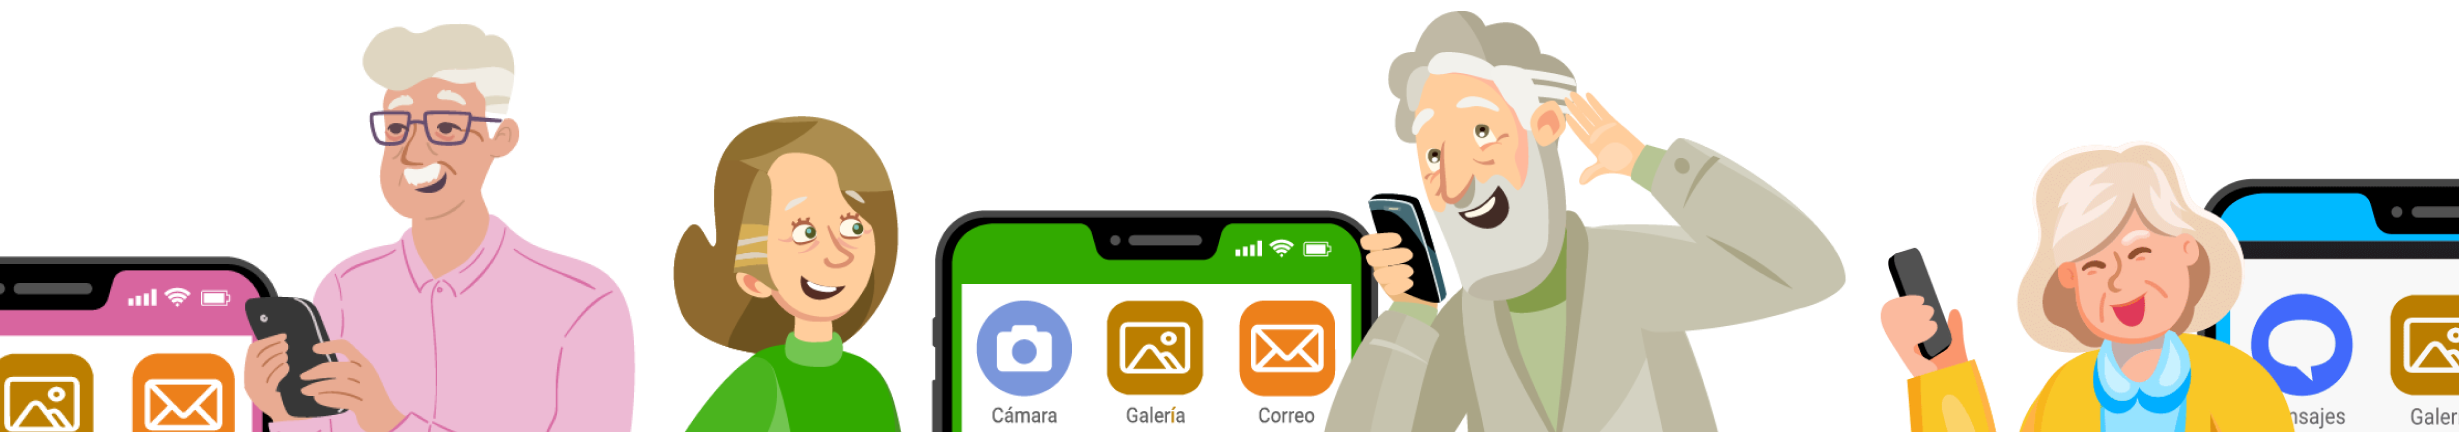 Ilustración decorativa que muestra personas mayores utilizando dispositivos tecnologicos. Una ilustración que busca retratar la digitalización de las personas mayores.